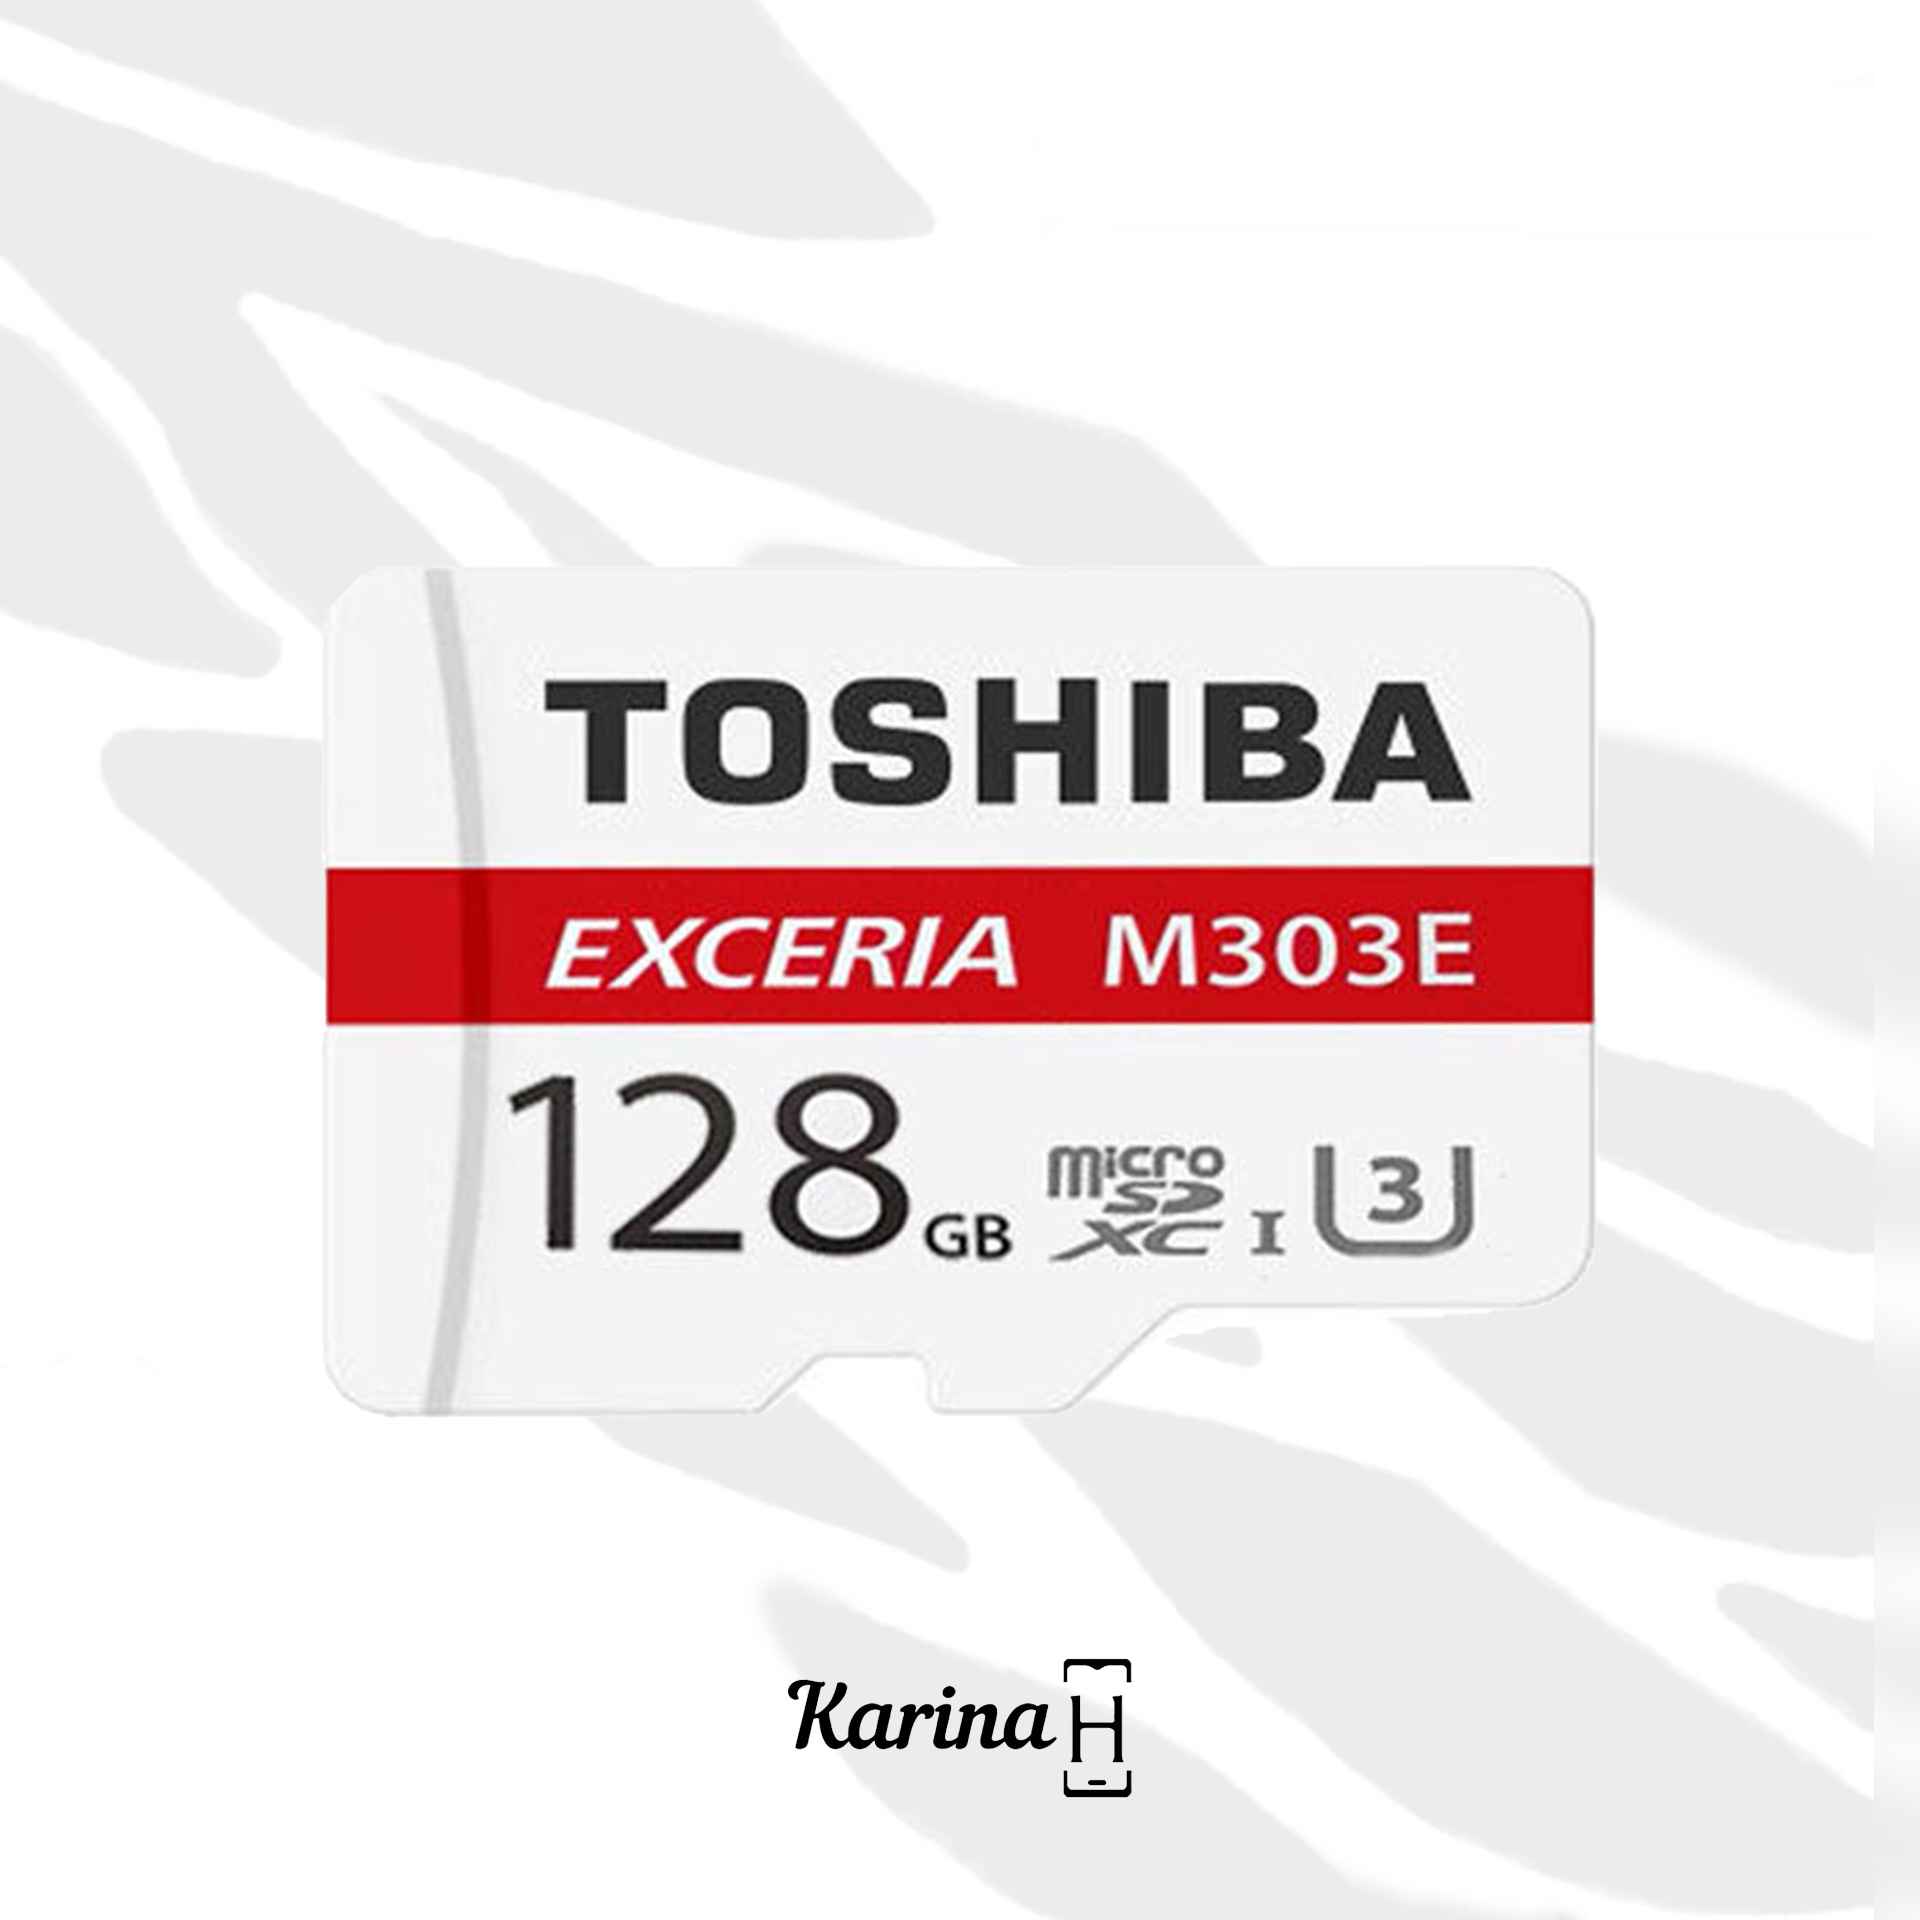 کارت حافظه microSDXC توشیبا مدل Exceria M303e کلاس 10 8MBps ظرفیت 128 گیگابایت